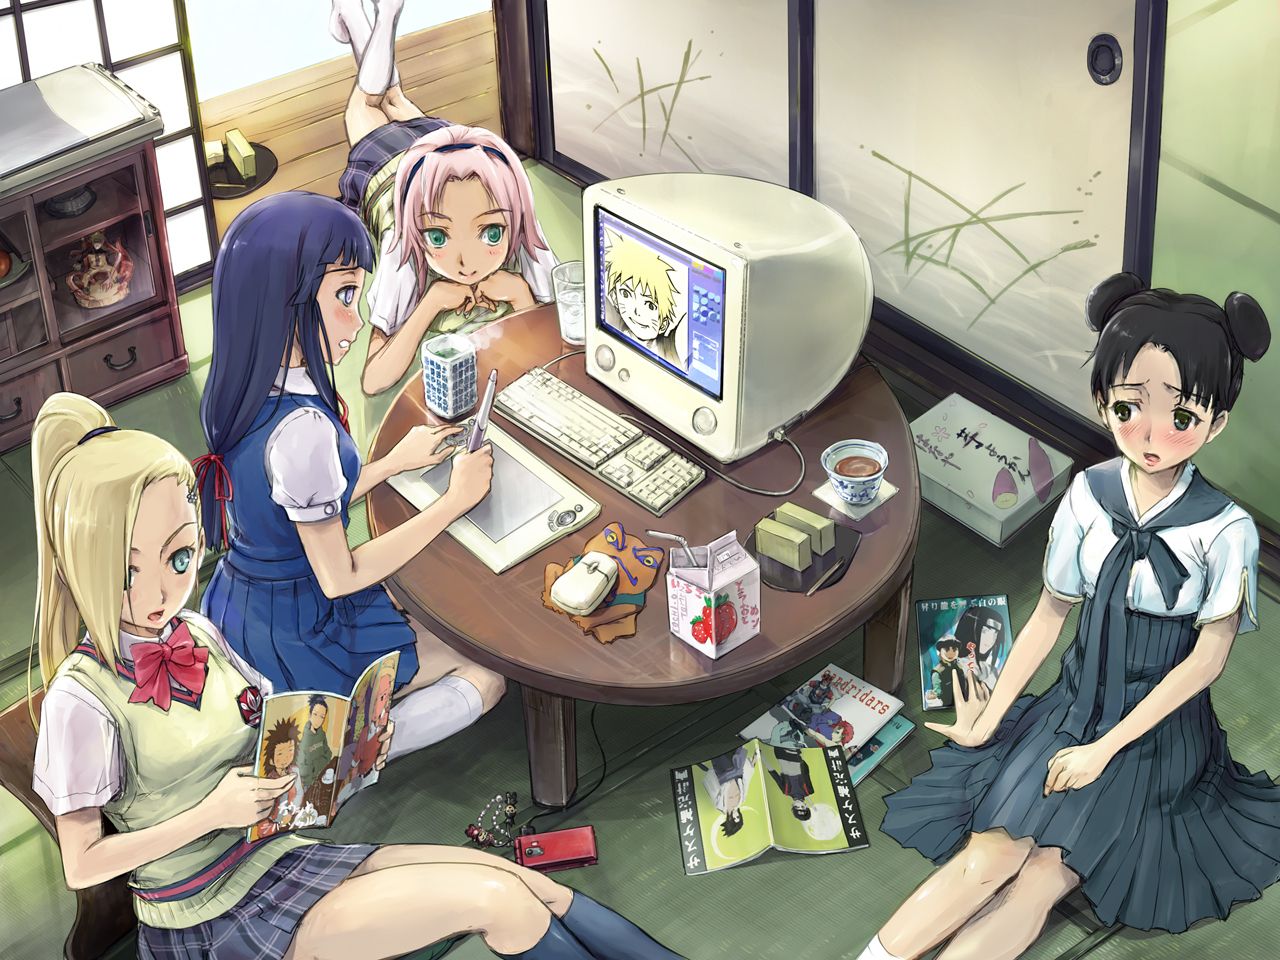 Sakura,hinata,tenten and ino - naruto girls Wallpaper 25361781